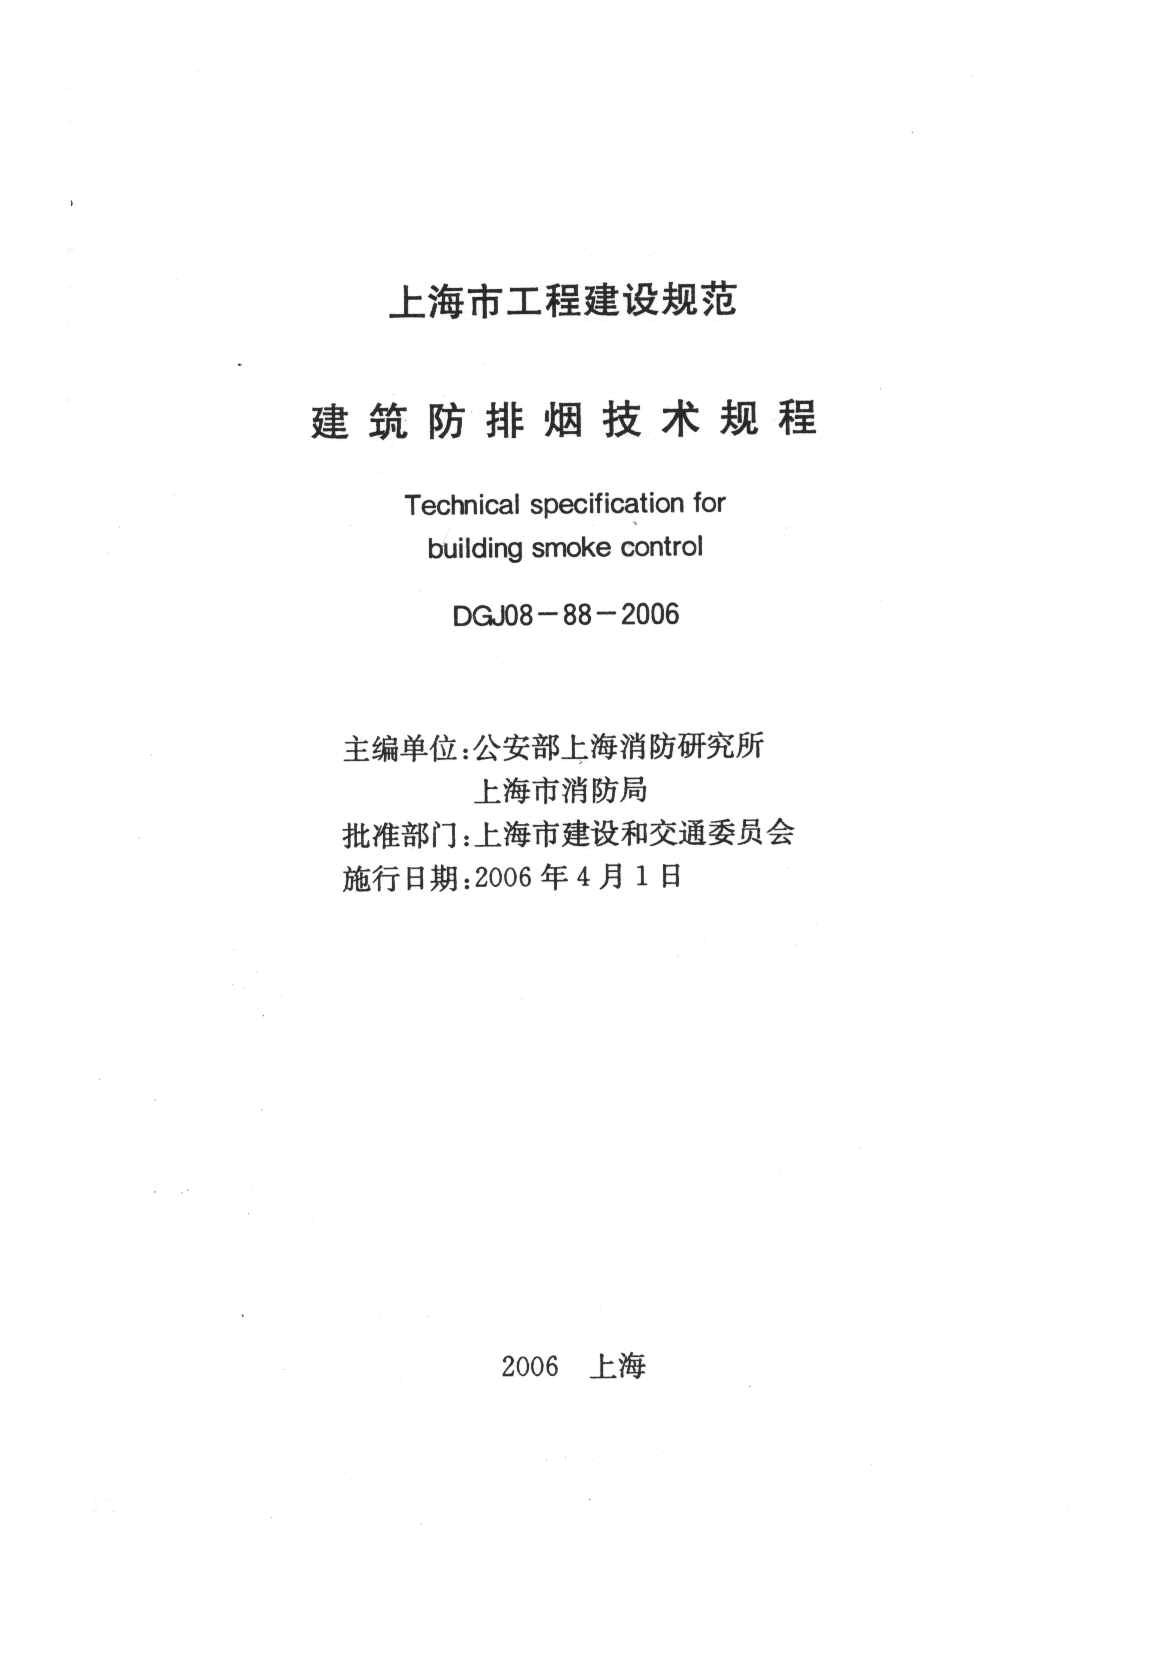 上海市建筑防排烟技术规程(附条文说明)DGJ08-88-2006